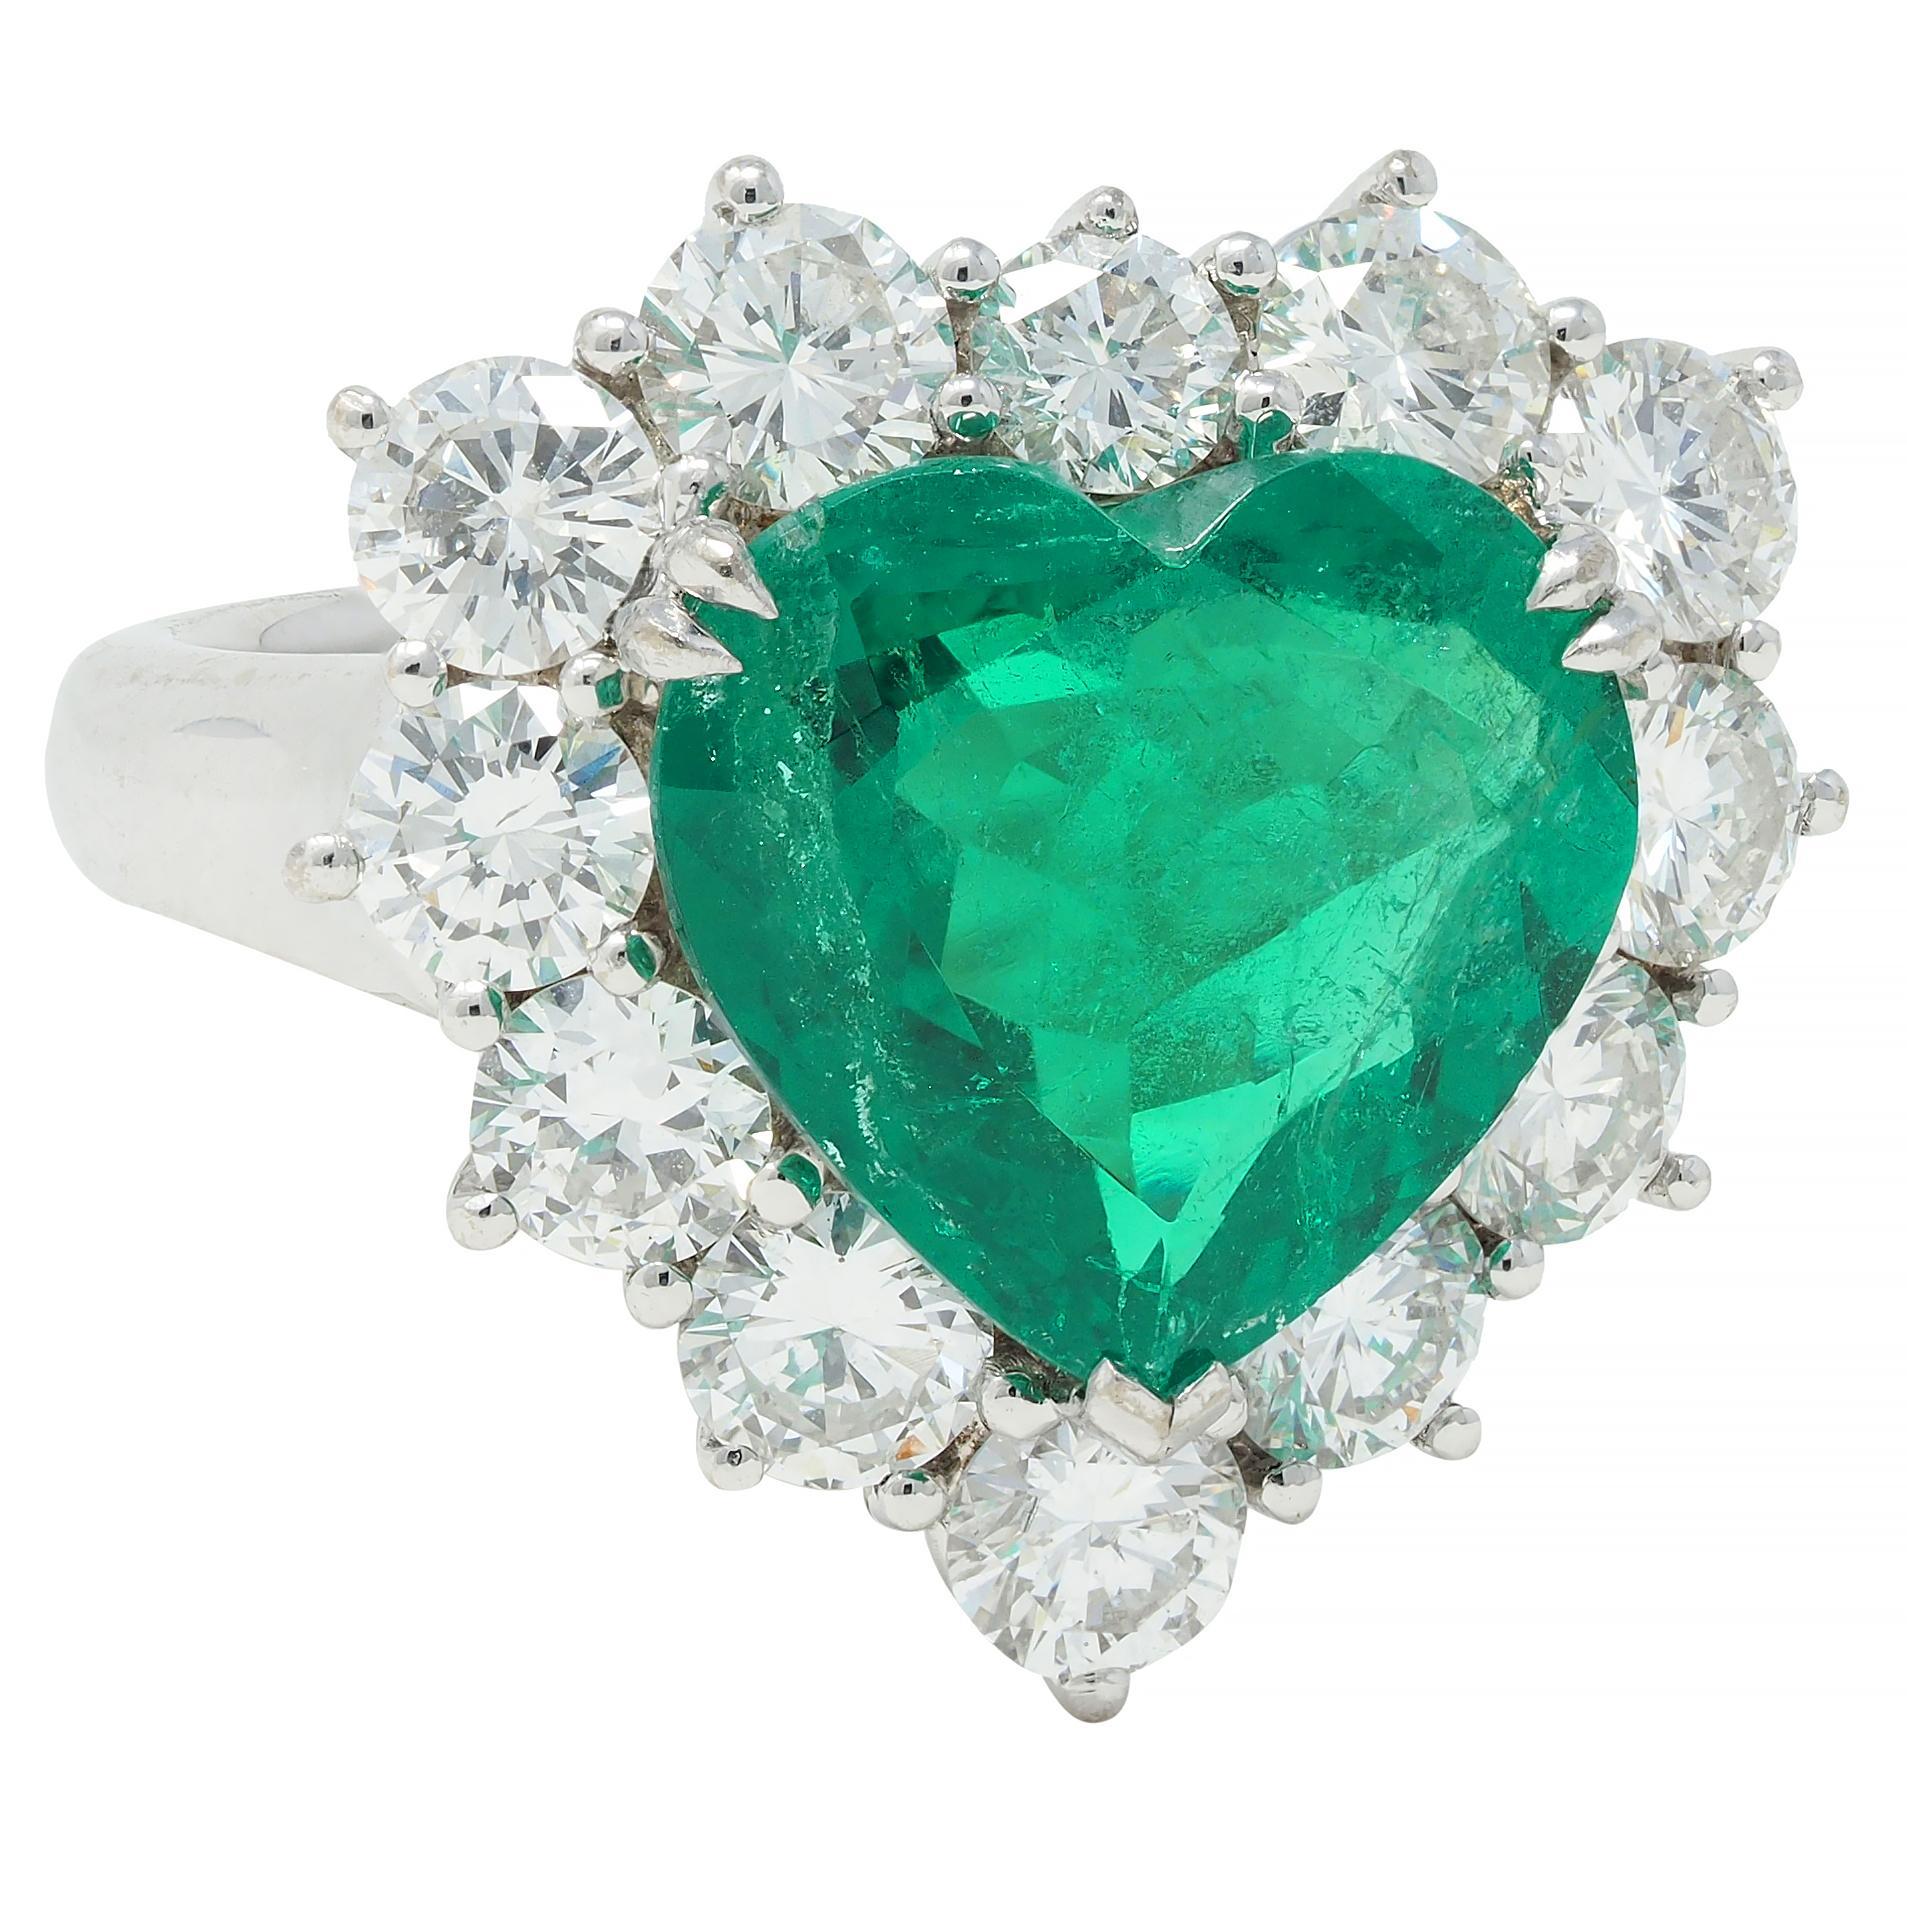 Au centre, une émeraude taillée en cœur pesant 4,62 carats - de couleur vert moyen transparent
Naturelle d'origine colombienne avec une légère amélioration moderne de la clarté. 
Serti de griffes de talon fendues entourées d'un halo de diamants